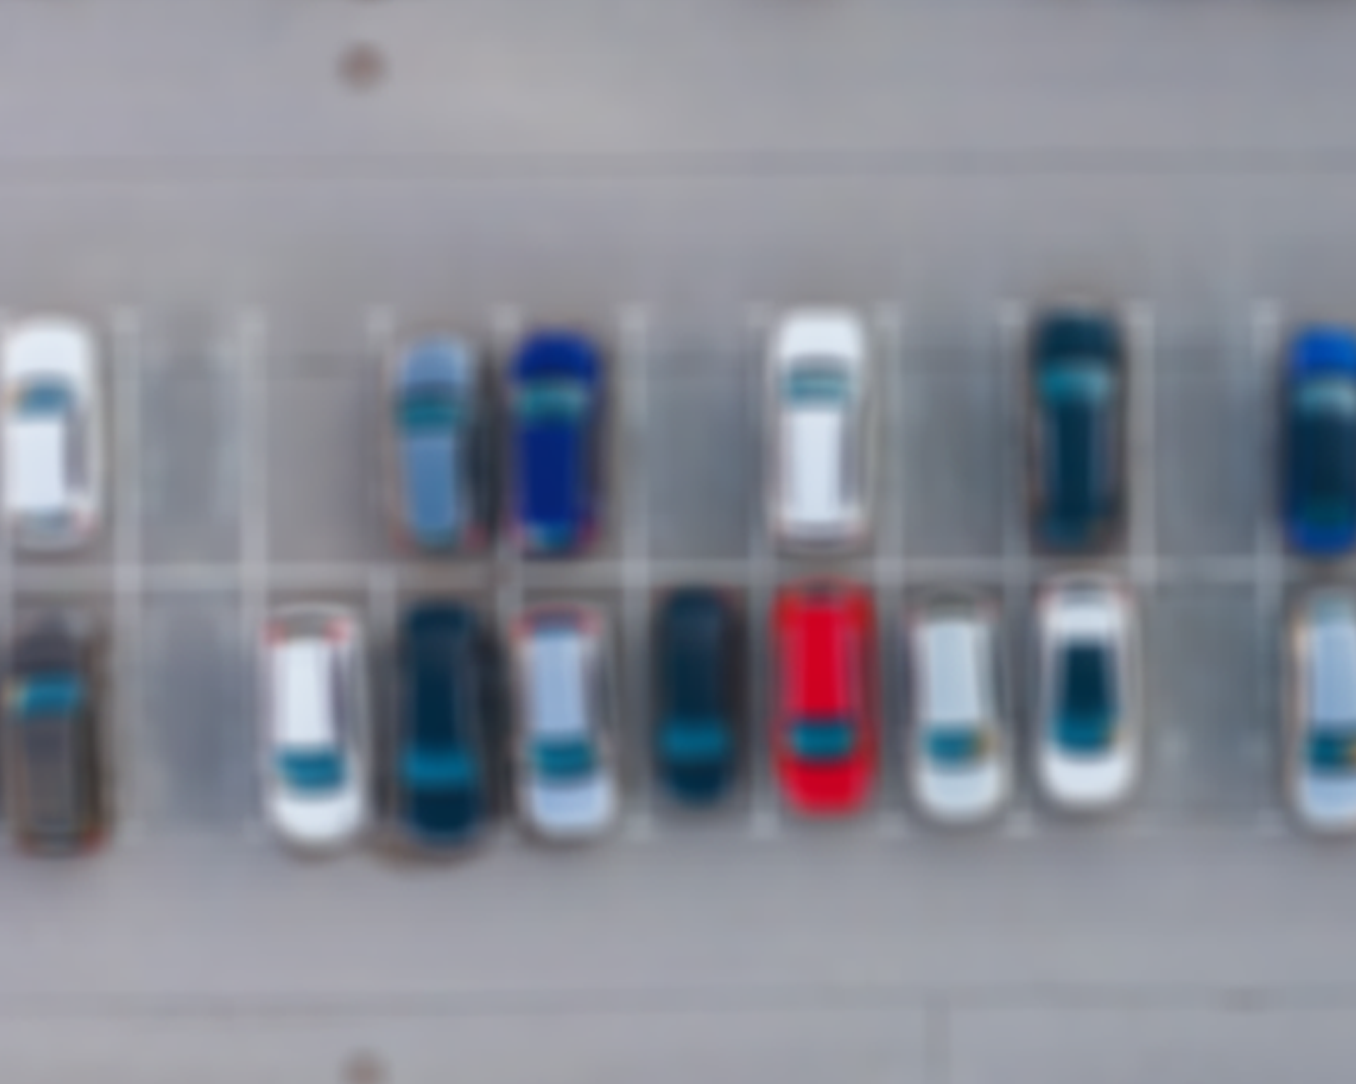 Satellite Image of Parking Lot